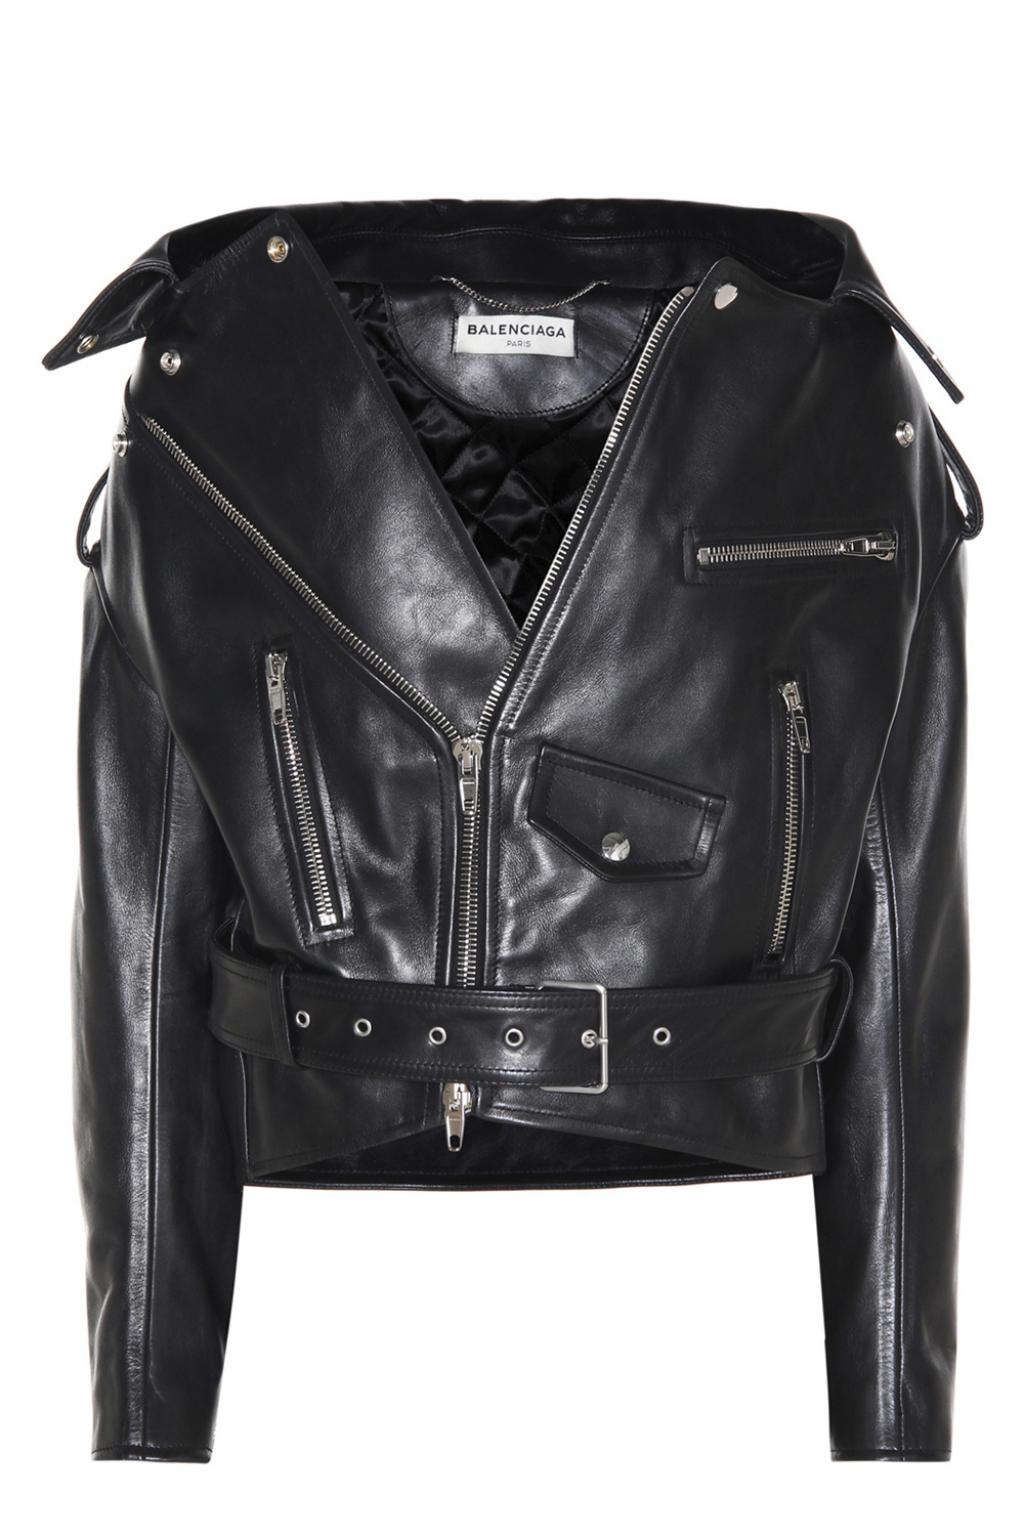 balenciaga oversized leather jacket